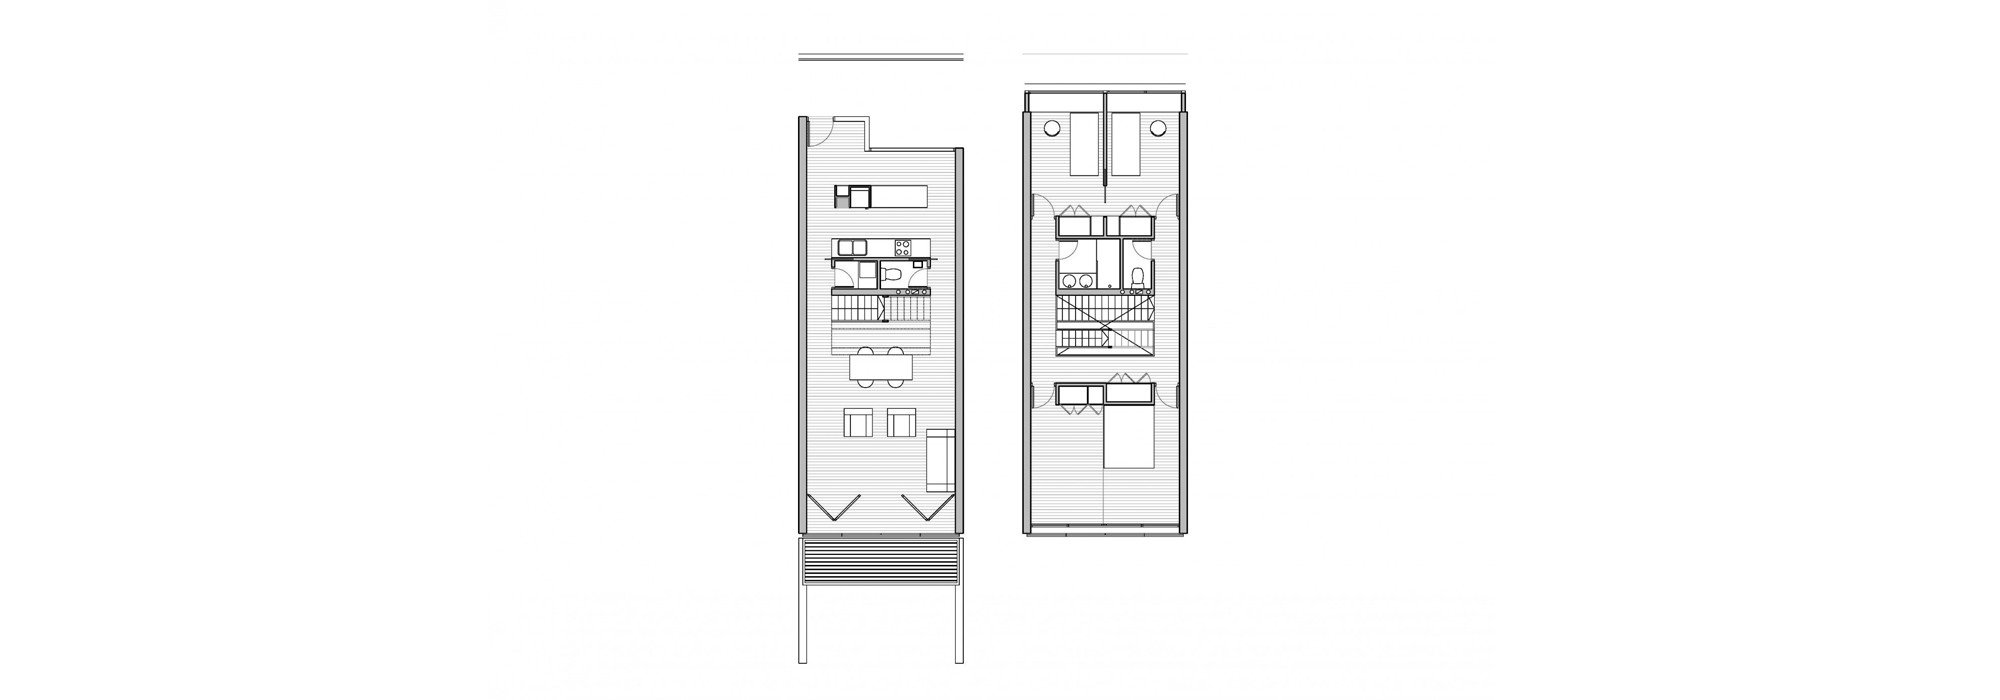 6x14 :: CATÁLOGO DE VIVIENDAS :: NUÑO ARQUITECTURA  Arquitectura sostenible diseñada para tí